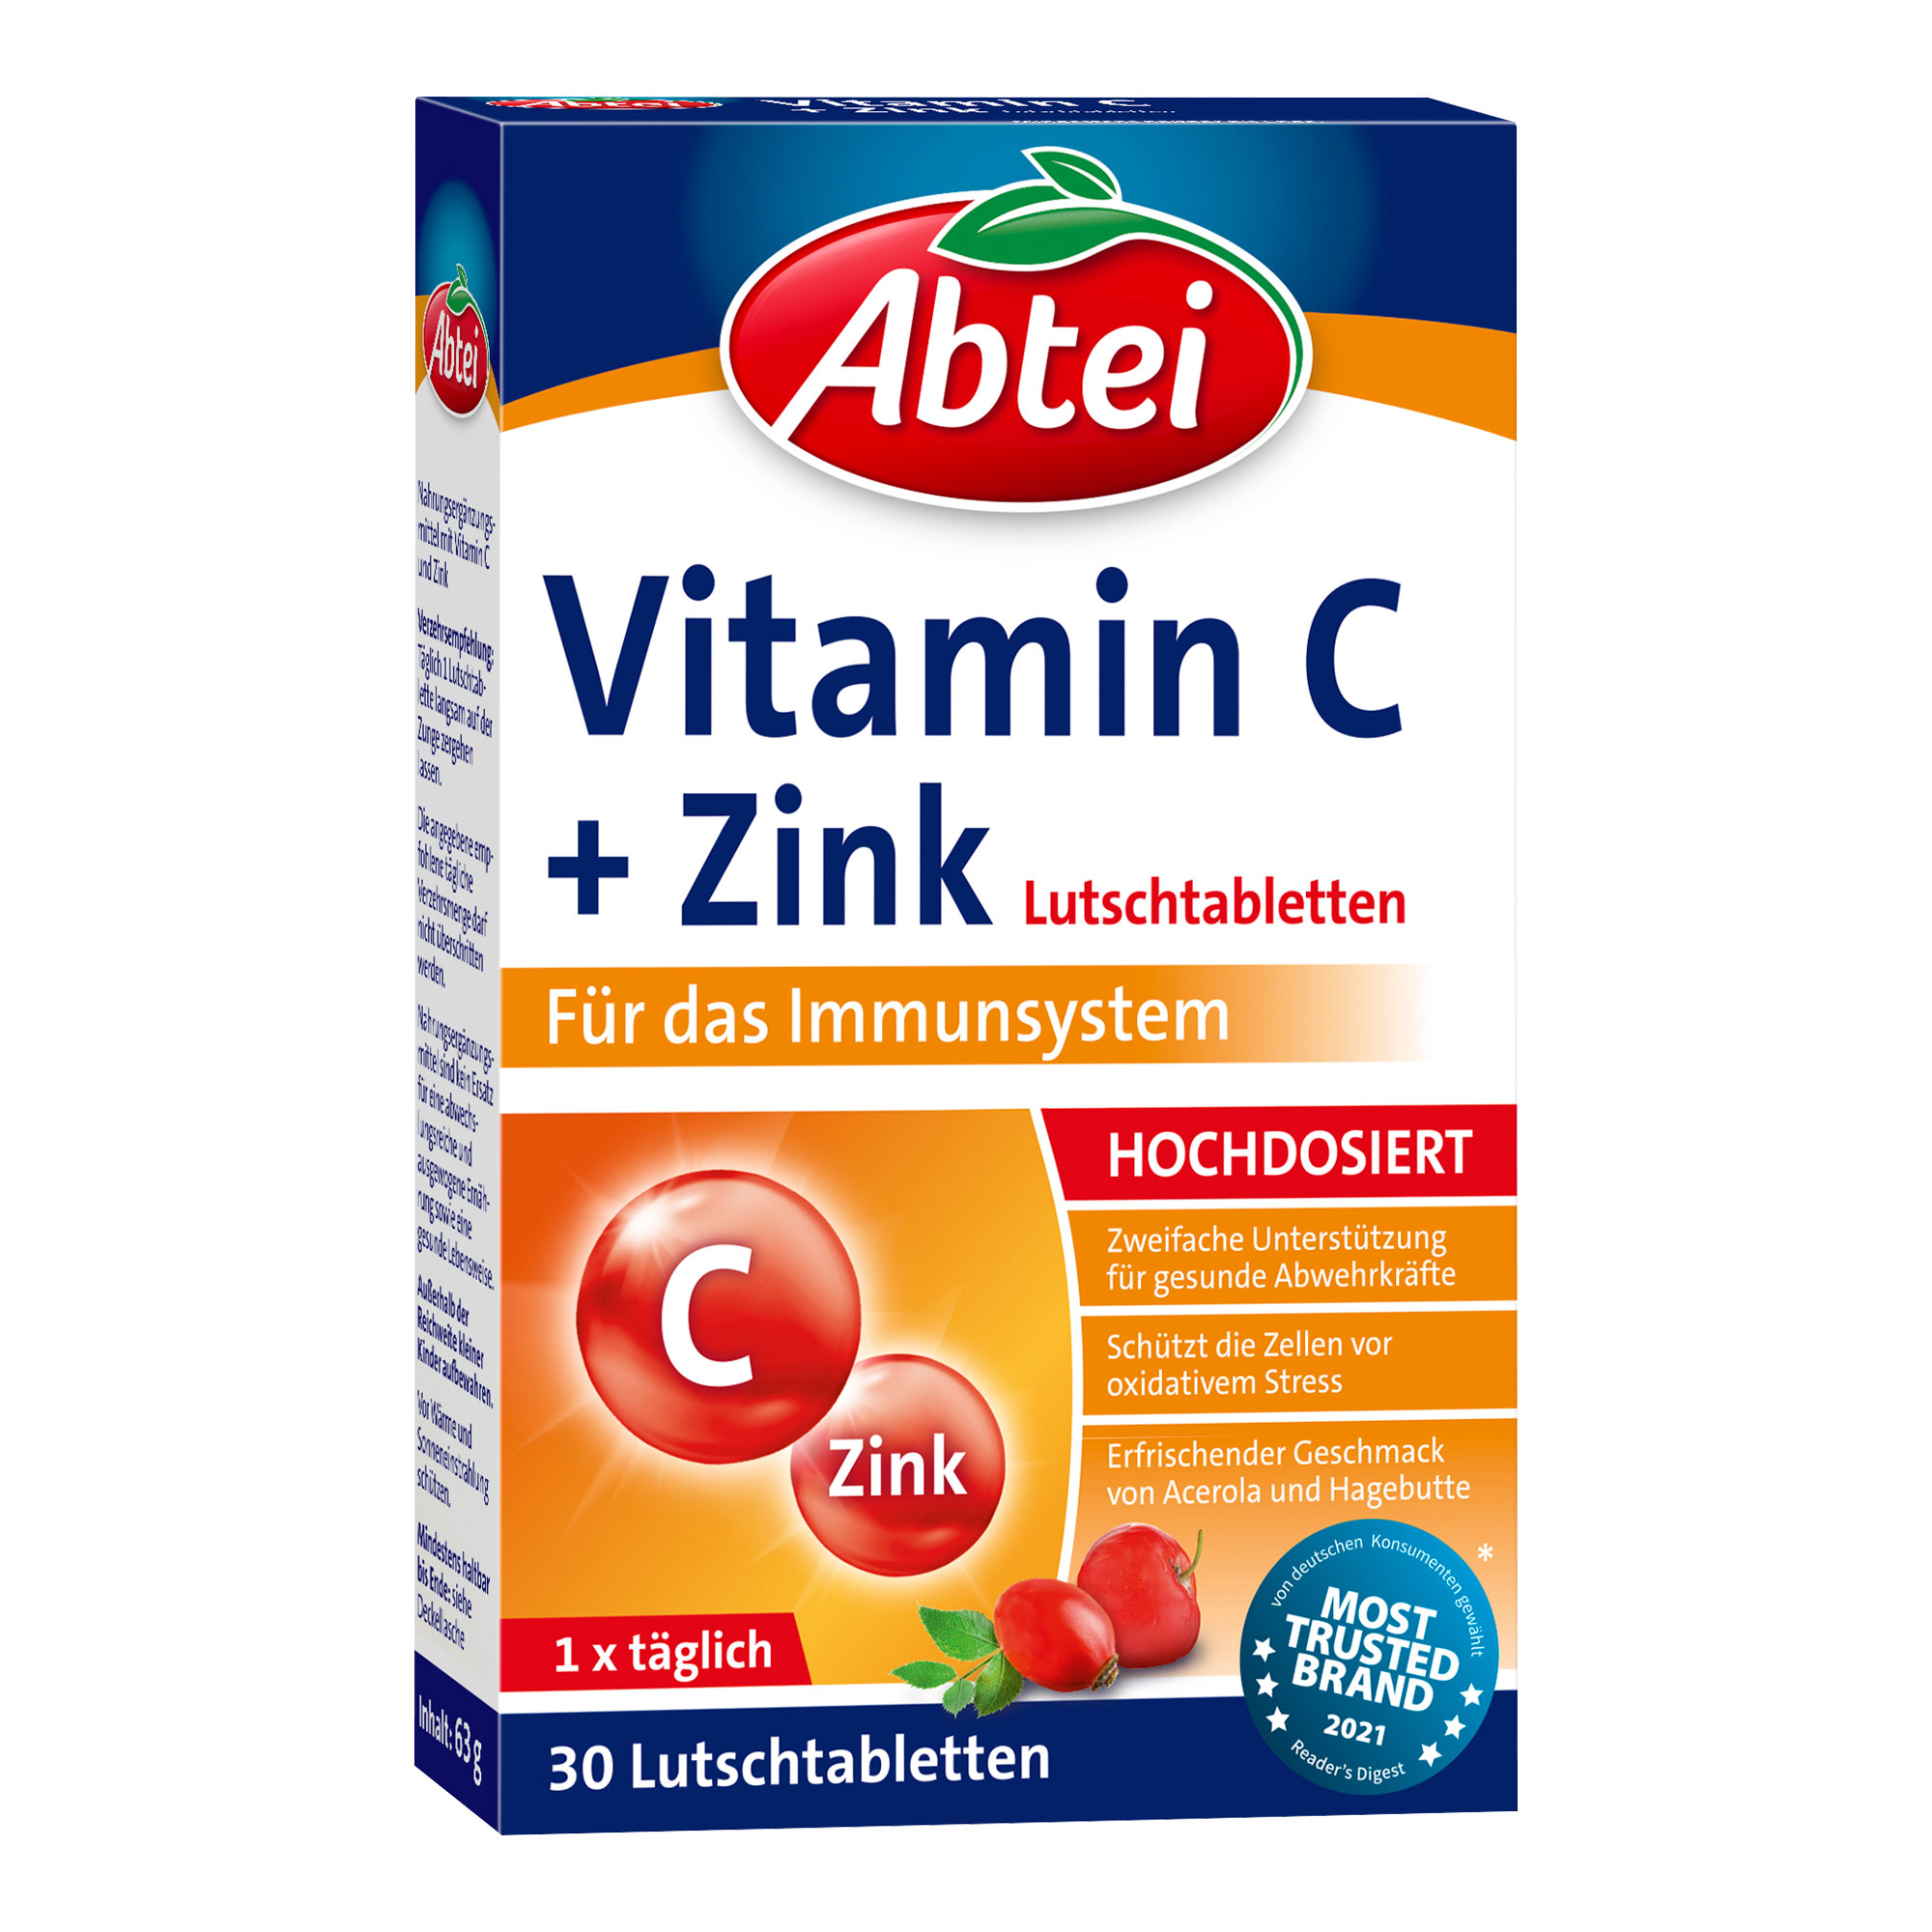 Nahrungsergänzungmittel mit Vitamin C und Zink. Erfrischender Geschmack von Acerola und Hagebutte.